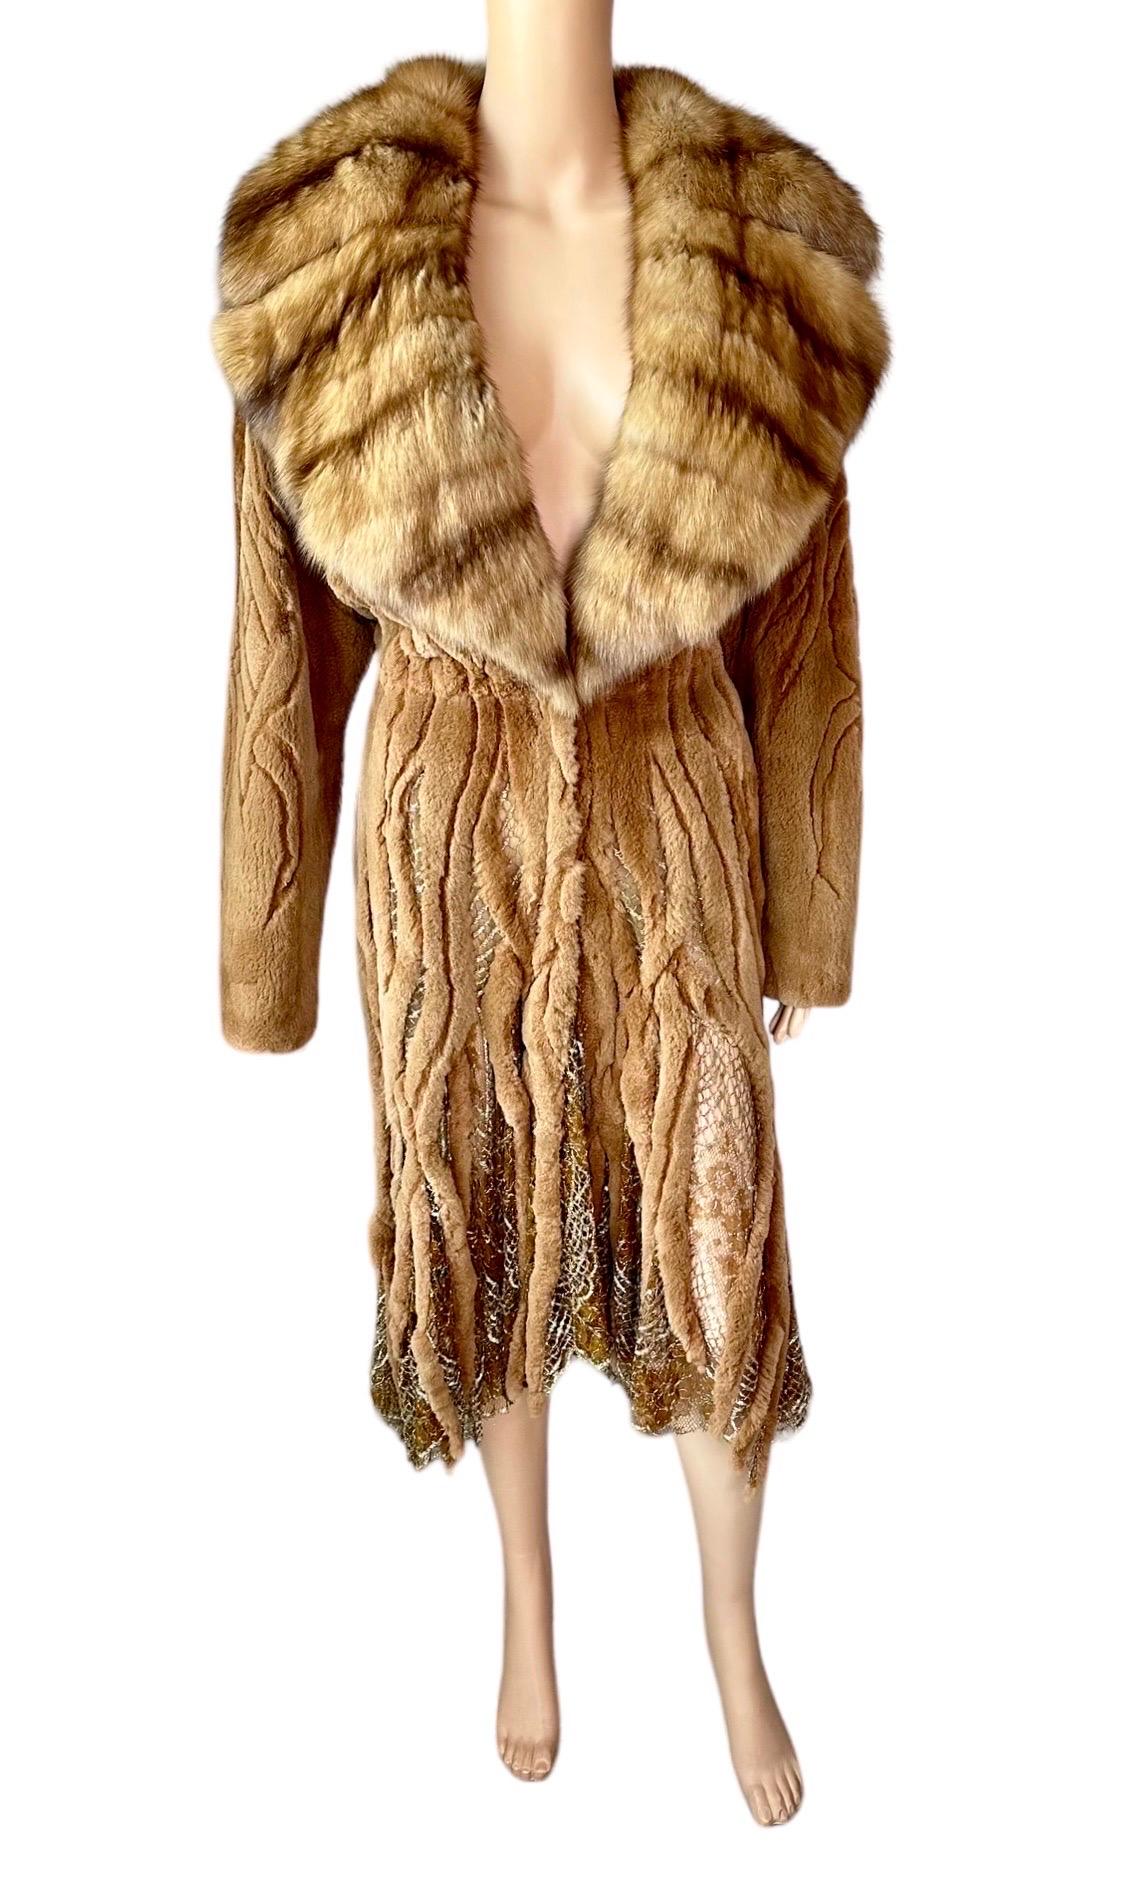 Atelier Gianni Versace c.1996 Fur Cutout Sheer Lace Mesh Panels Jacket Coat For Sale 2